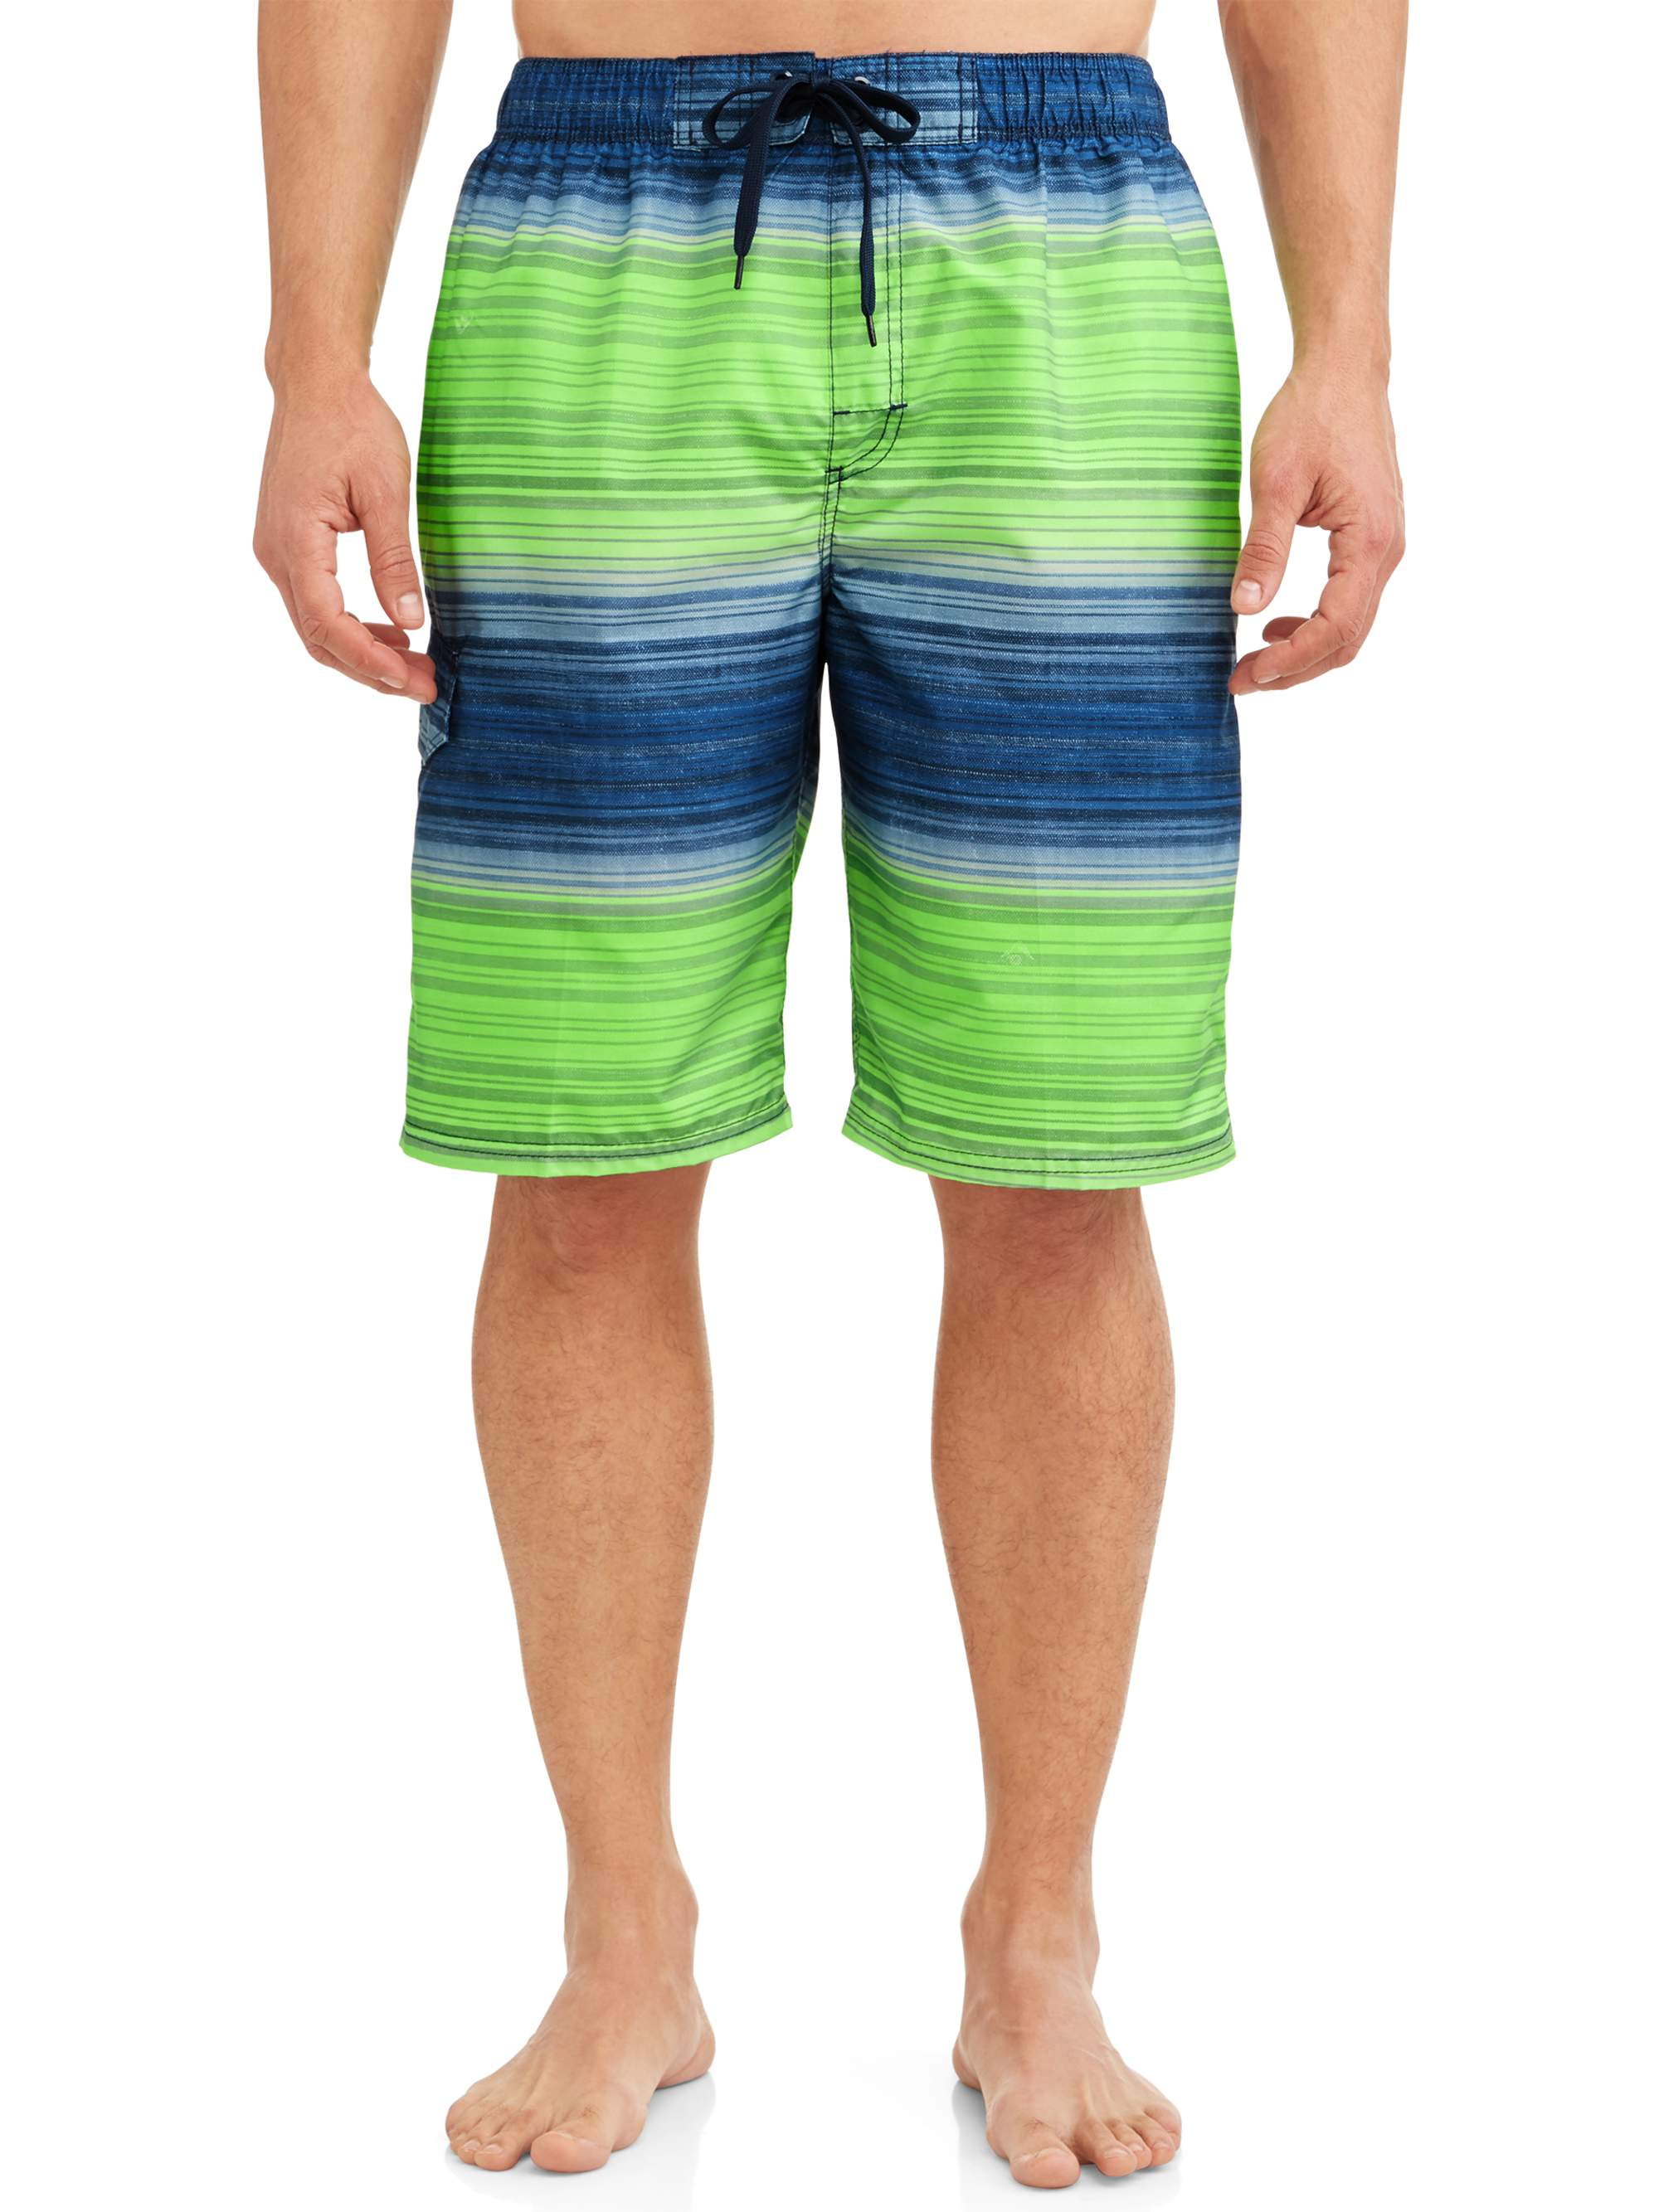 Kanu Surf - Kanu Surf Men's Haywire Print Long Trunk Swimsuit - Walmart ...